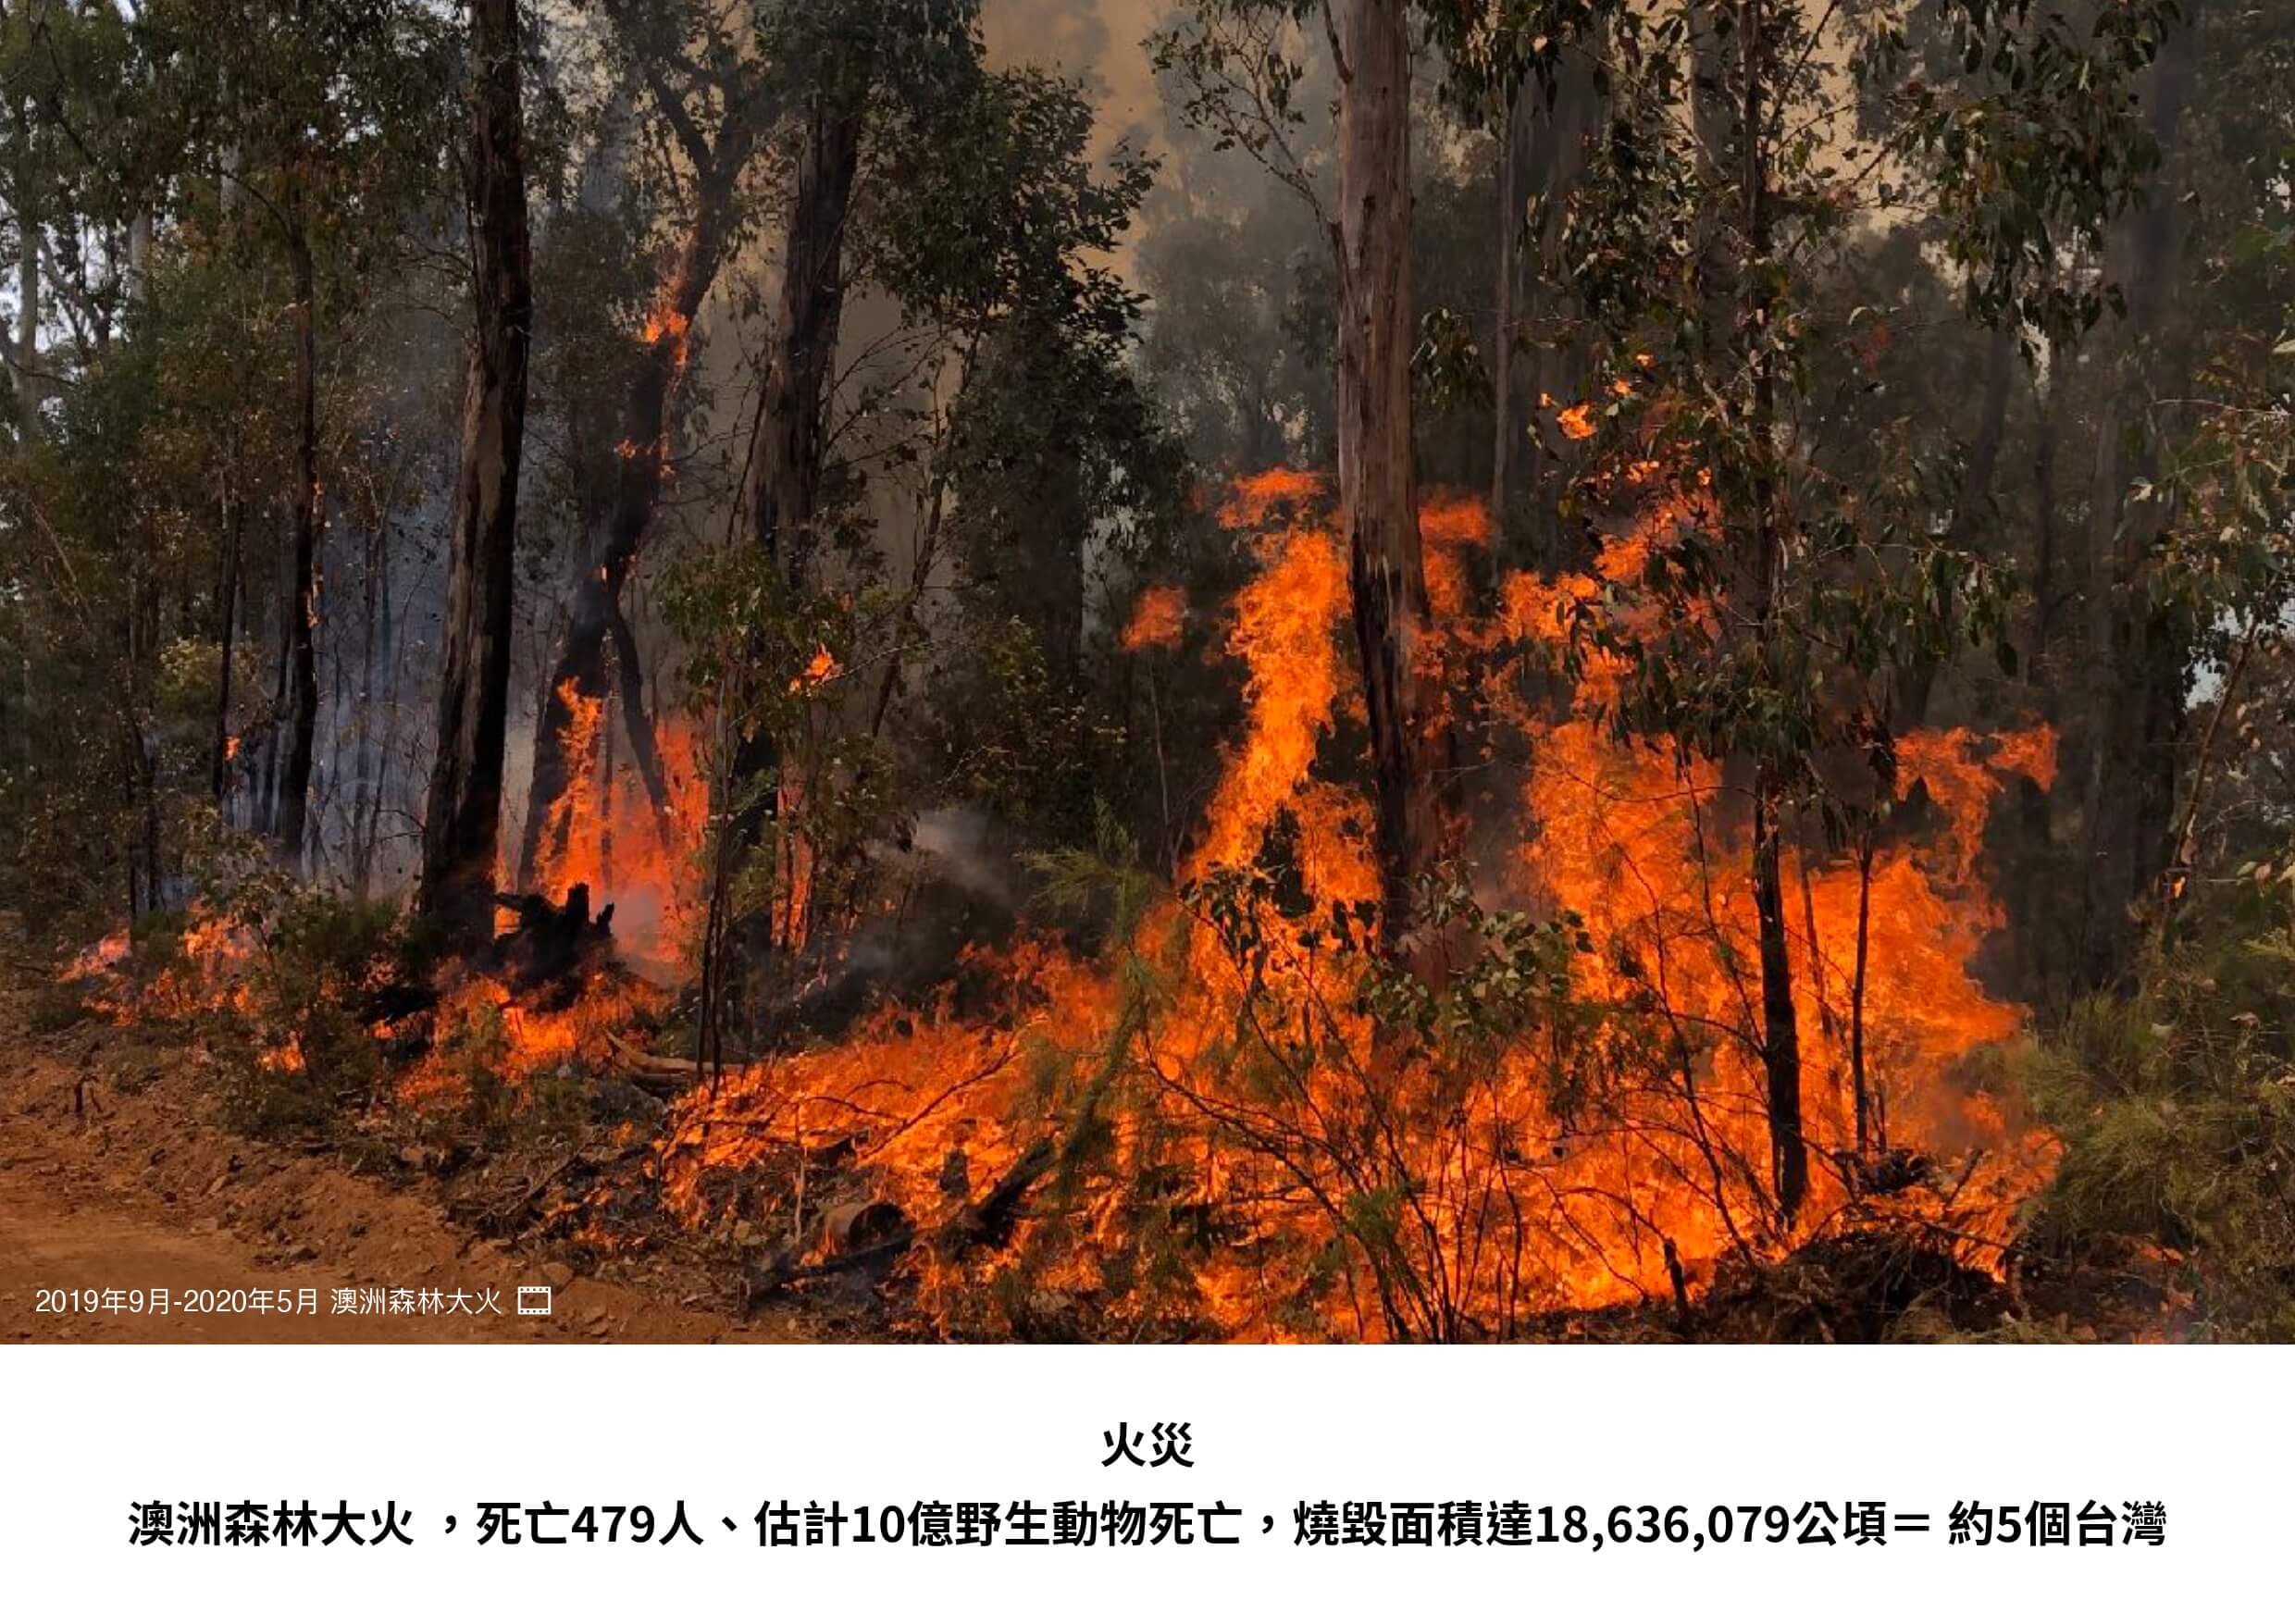 澳洲森林大火紀錄照片